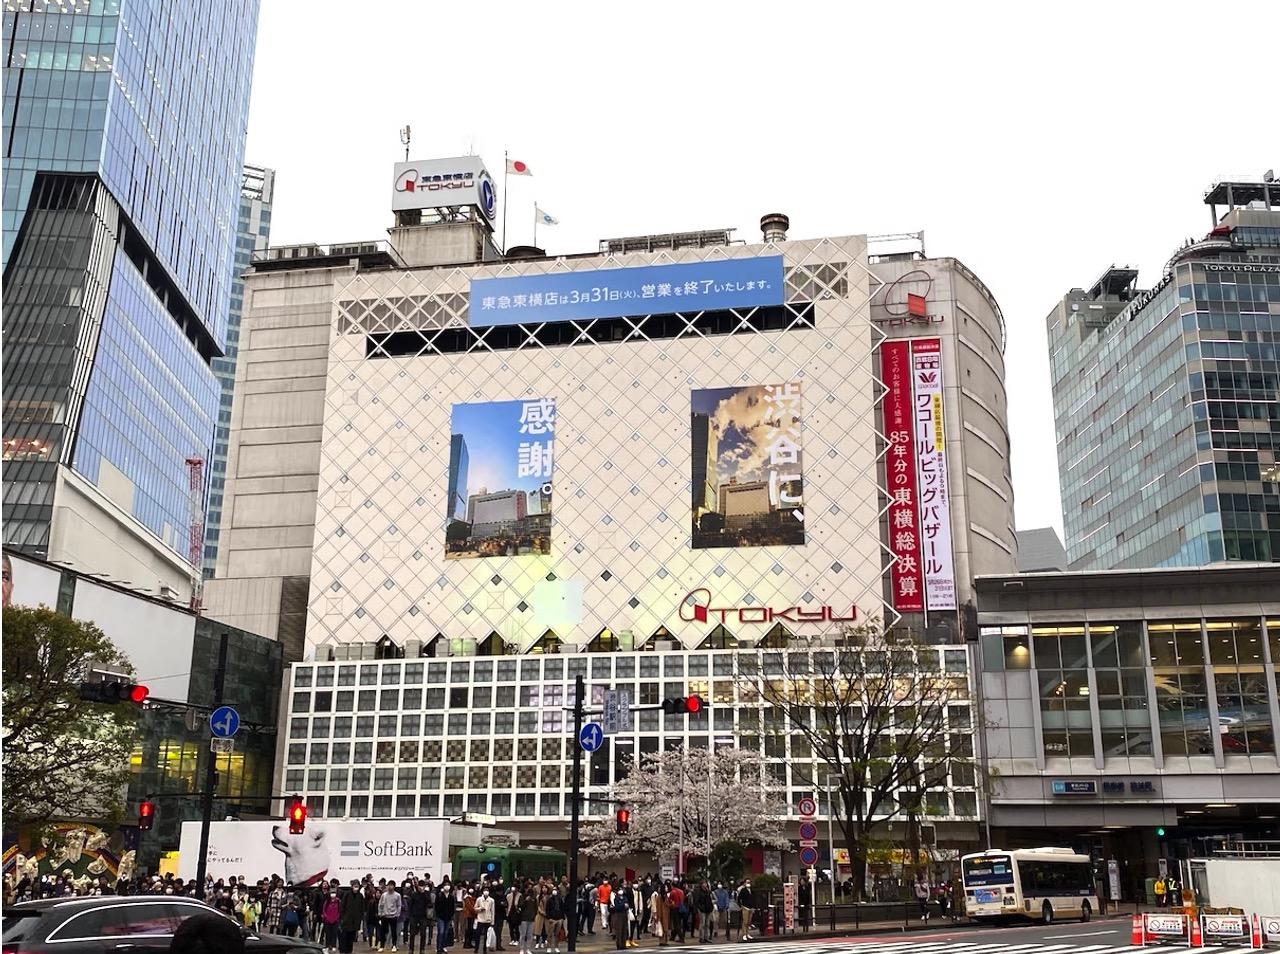 渋谷の東急本店が営業終了、55年の歴史に幕。店長メッセージ｢最後に 